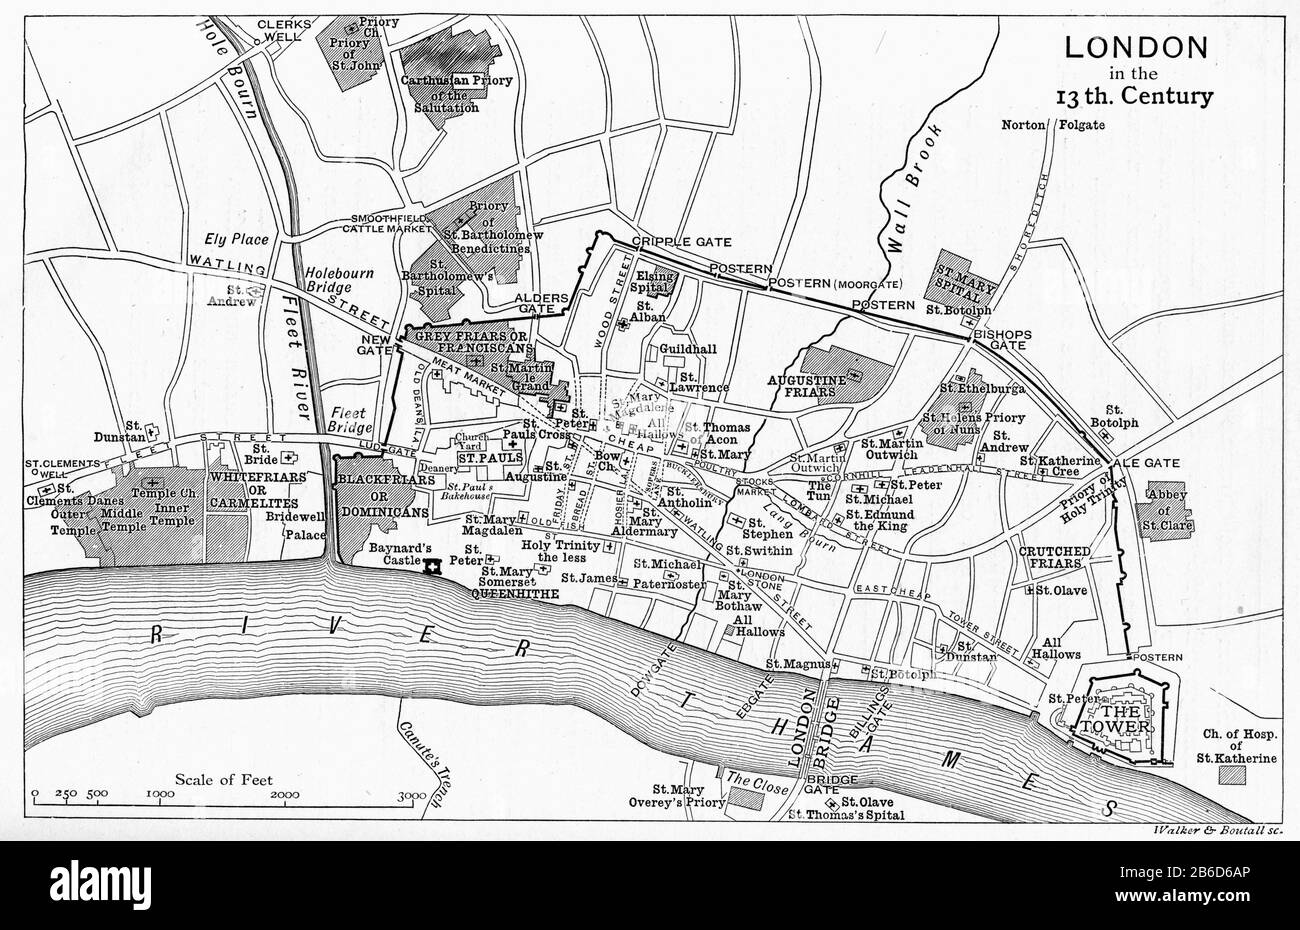 Une carte de Londres au XIIIe siècle. Au Moyen âge, Westminster était une petite ville au bord de la rivière de la ville de Londres. A partir du XIIIe siècle, Londres a grandi en deux parties différentes. Westminster est devenue la capitale royale et le centre du gouvernement, alors que la ville de Londres est devenue le centre du commerce et du commerce, une distinction qui est encore évidente à ce jour. Banque D'Images